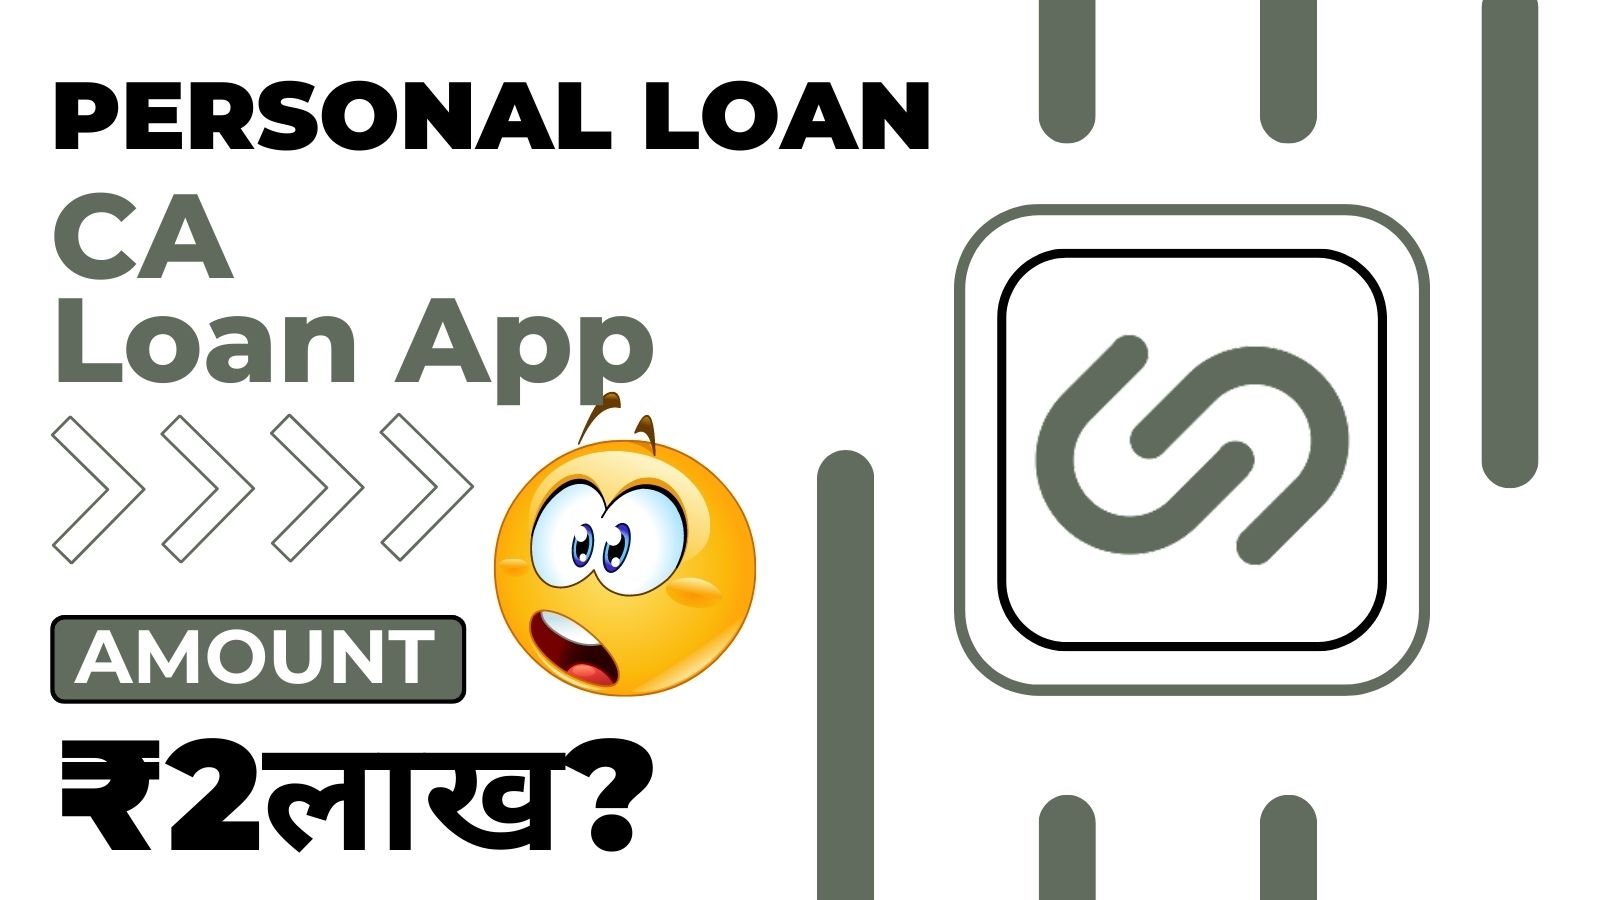 CA Loan App Loan Amount